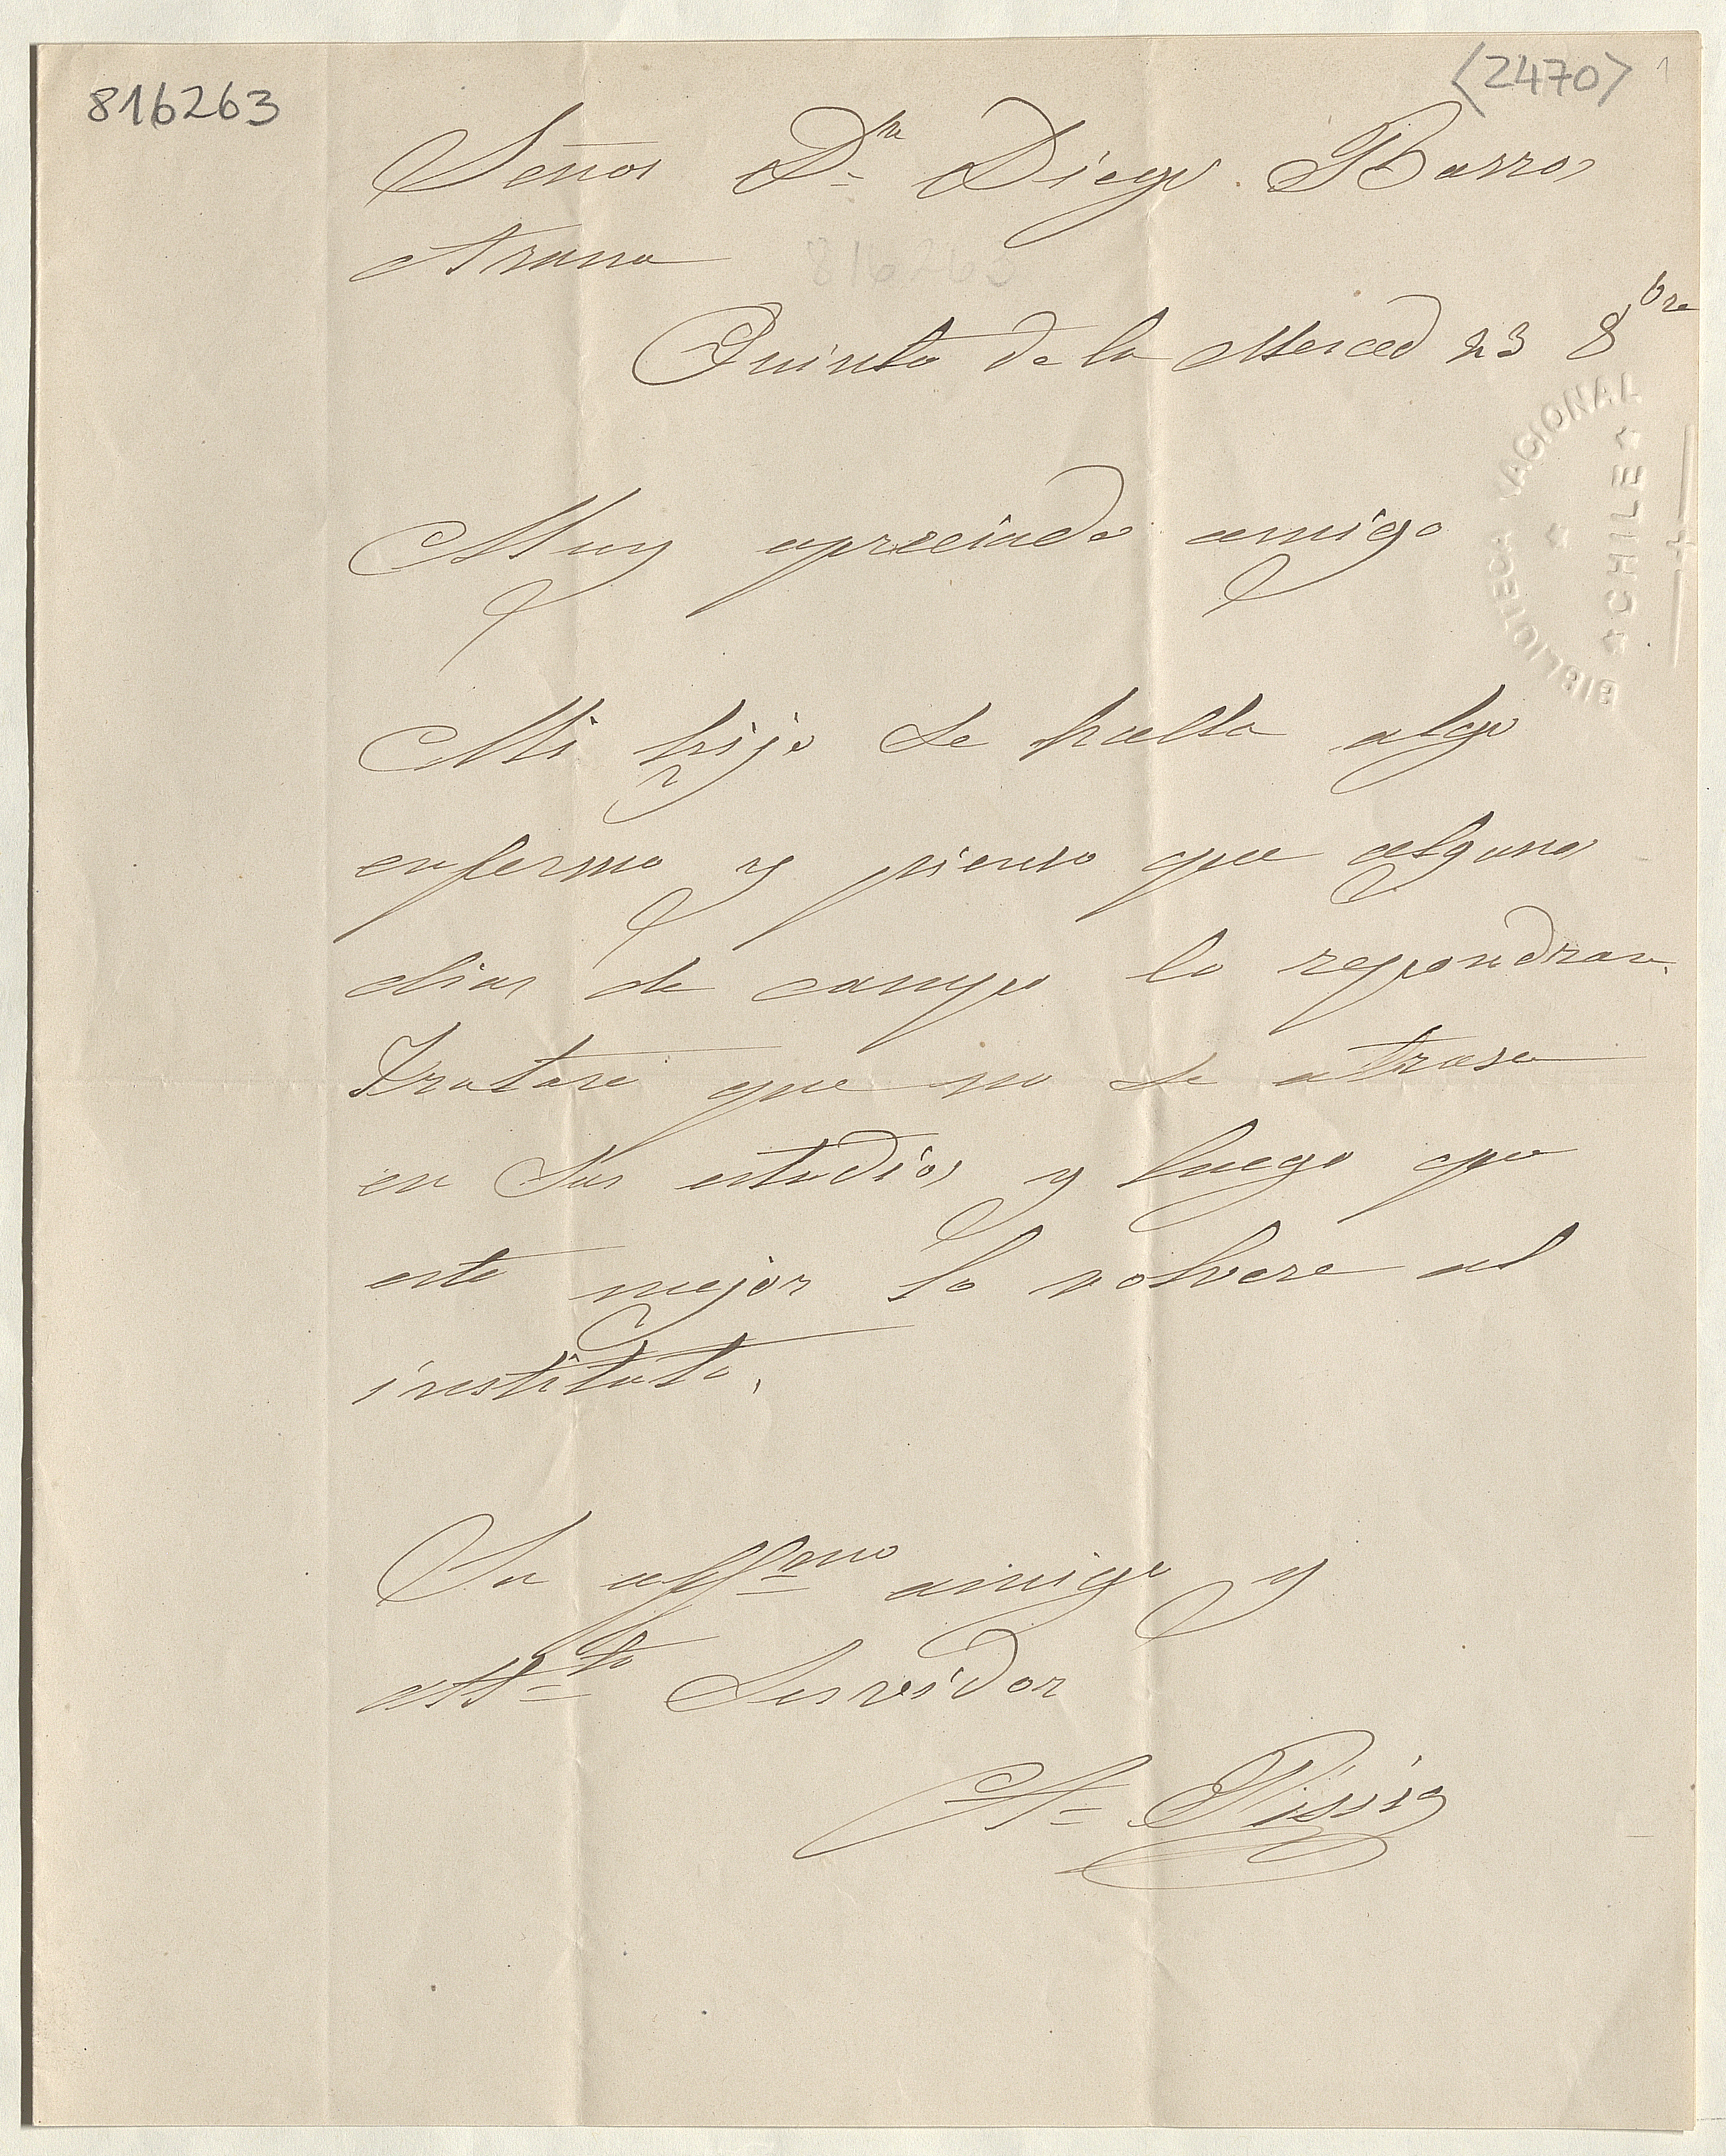 [Carta, 1866?] Sep. 23, Quinta de la Merced [al] Señor Dn. Diego Barros Arana[manuscrito]